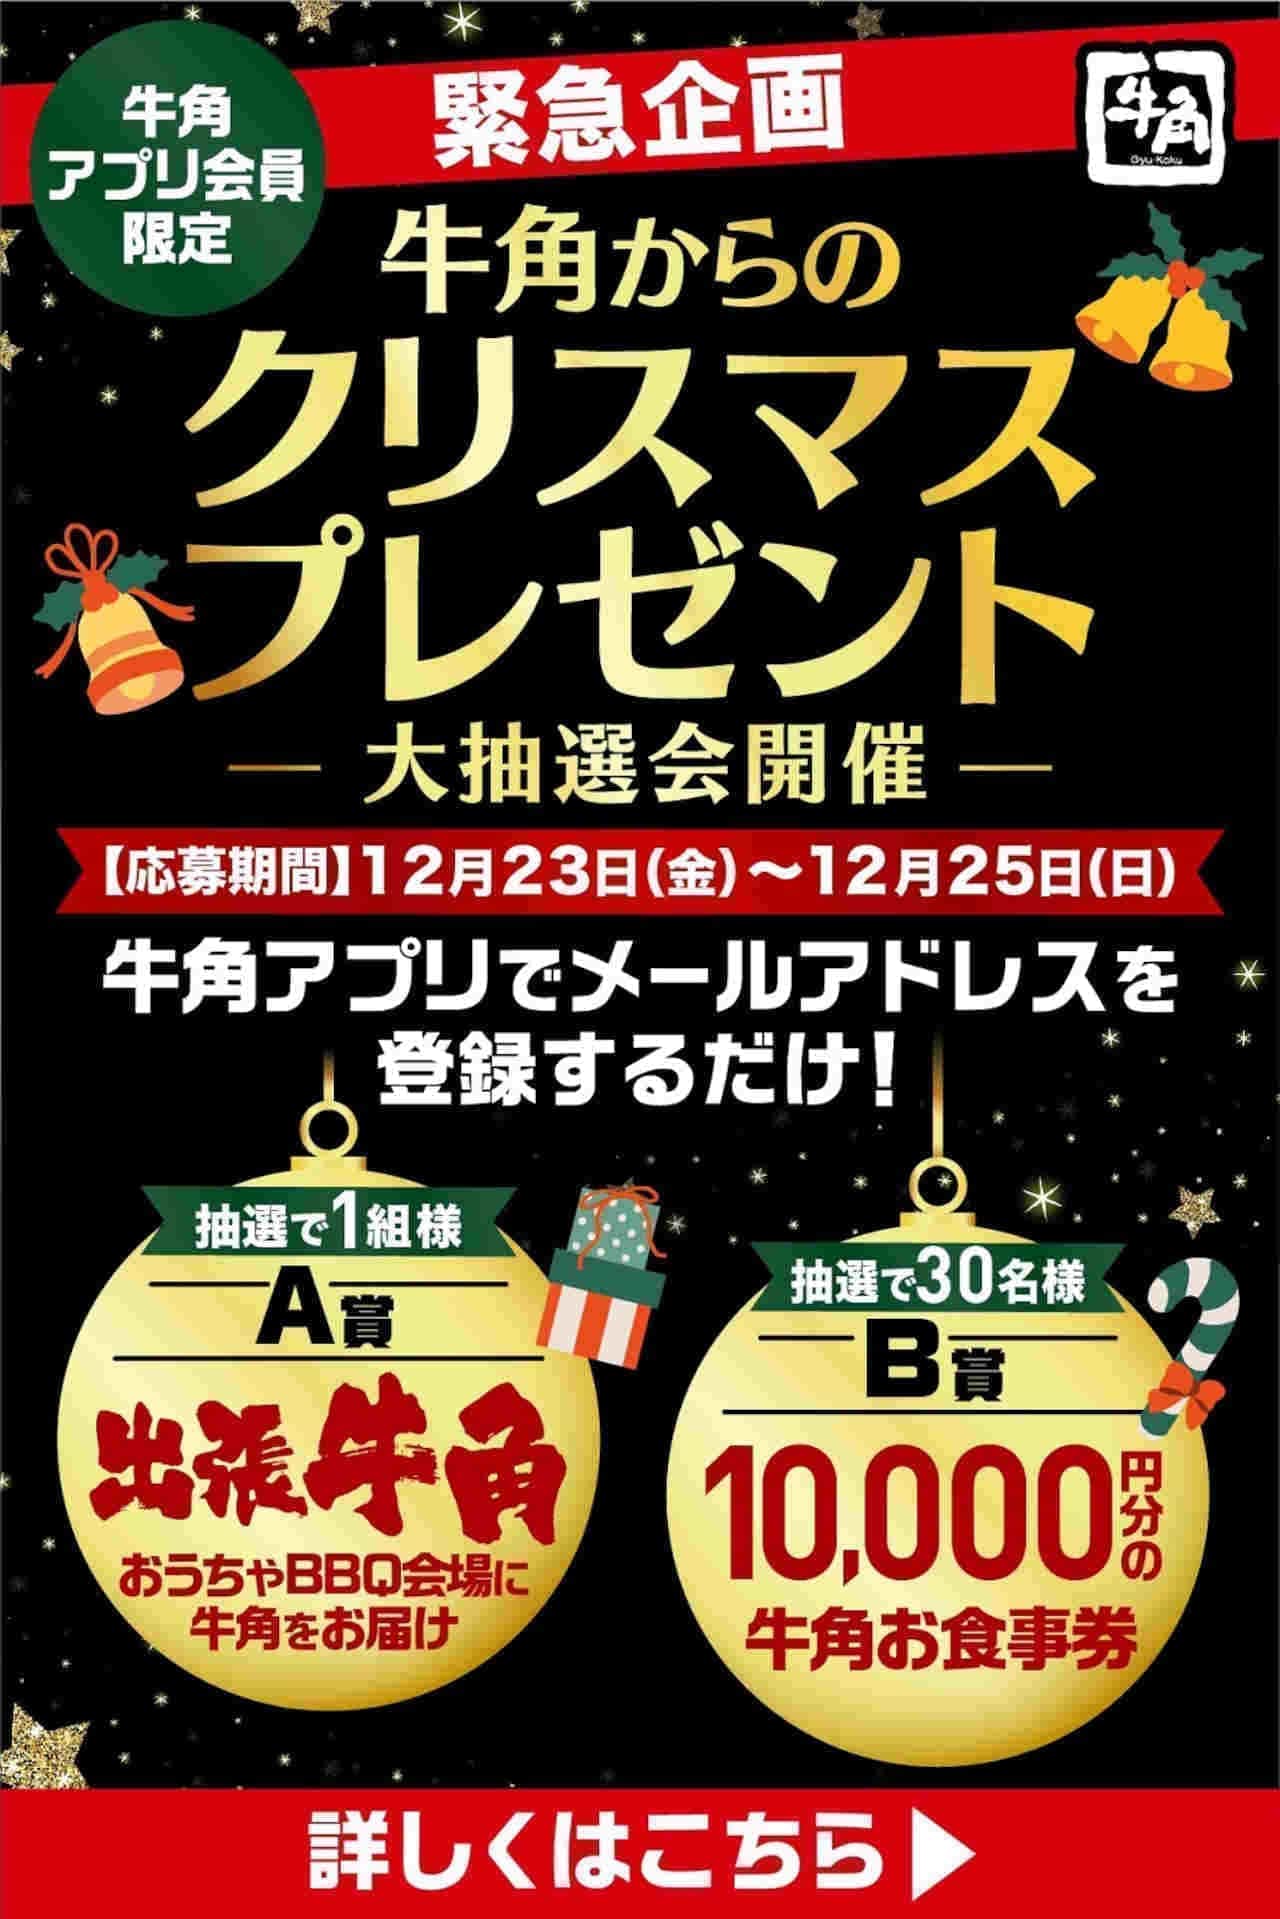 Gyukaku "Christmas Present from Gyukaku" Campaign